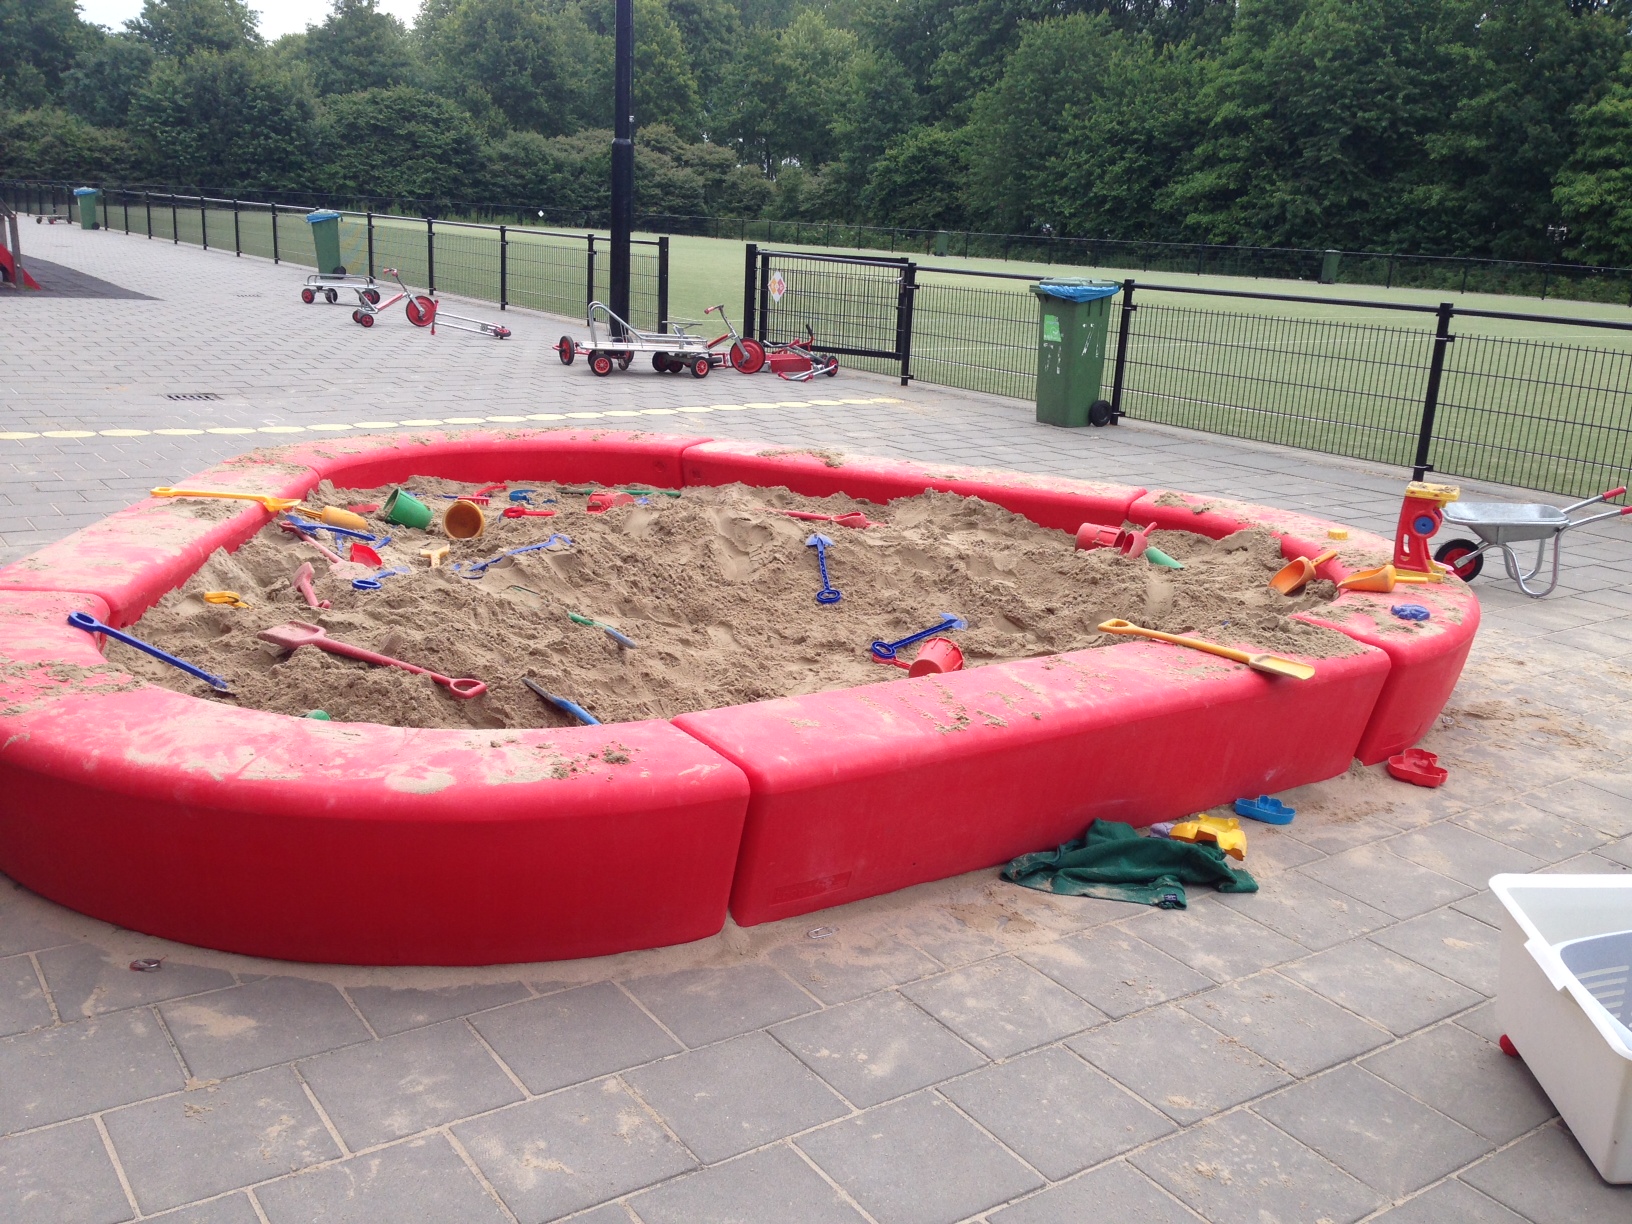 Loop zandbak - Kindvriendelijk door veilig afgeronde vormen